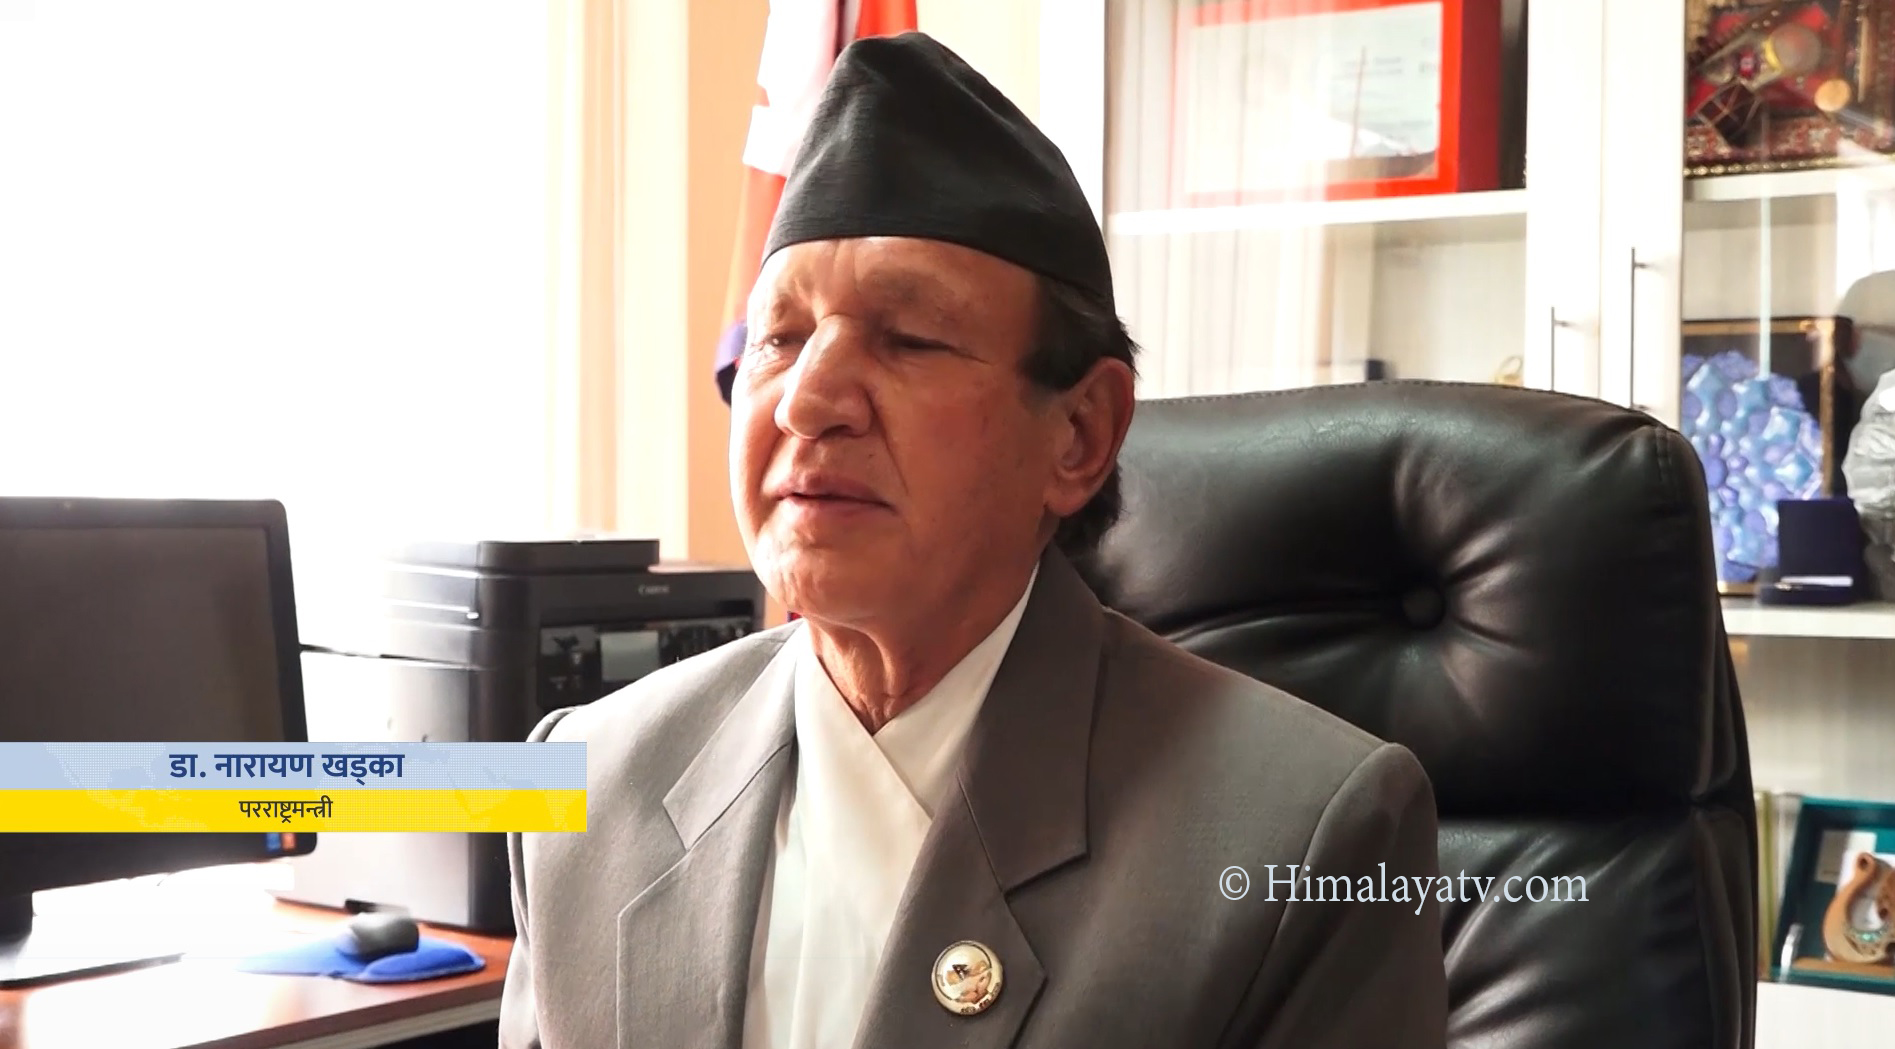 नेपालमा छिट्टै उच्चस्तरीय भ्रमण हुने परराष्ट्रमन्त्री खड्काको दाबी